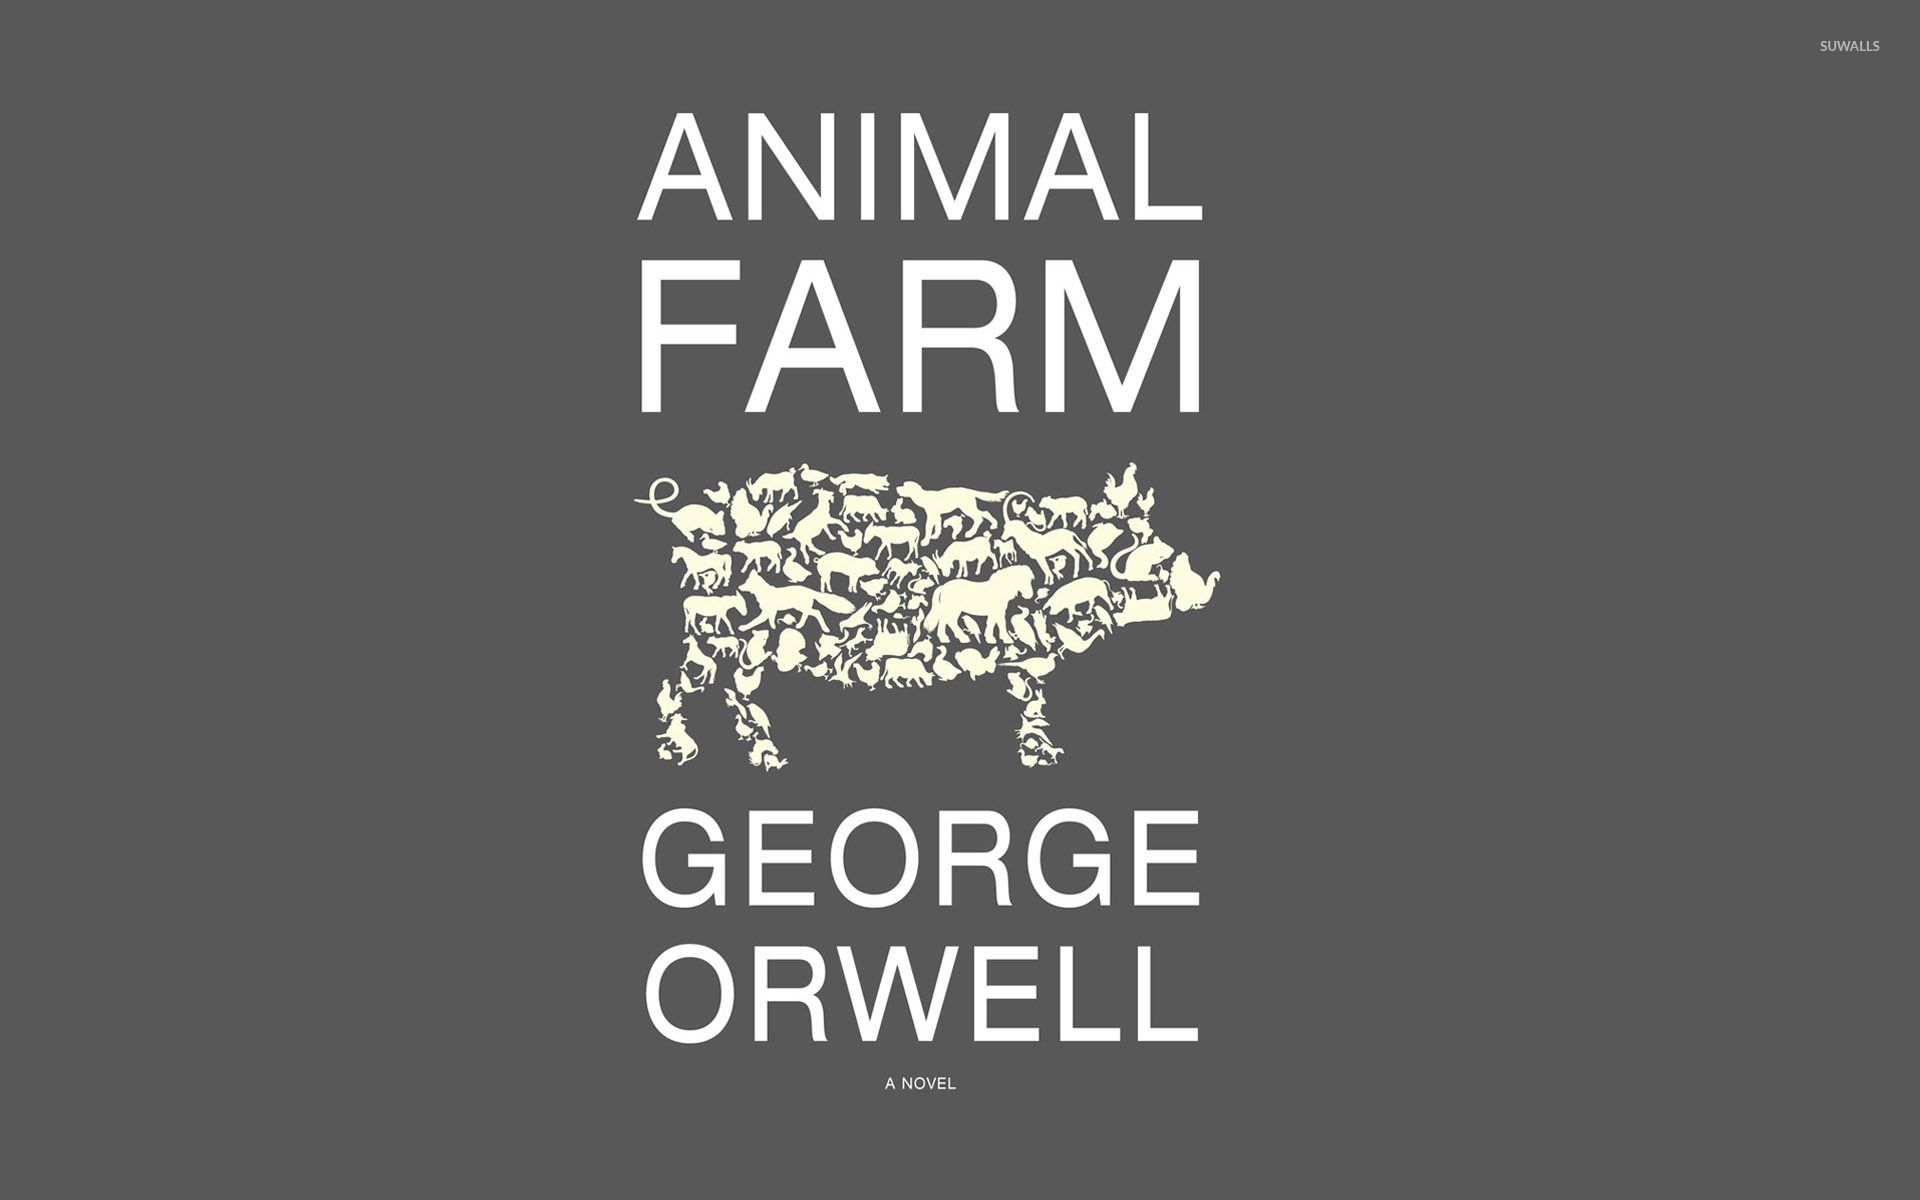 George Orwell's Animal Farm wallpaper .suwalls.com